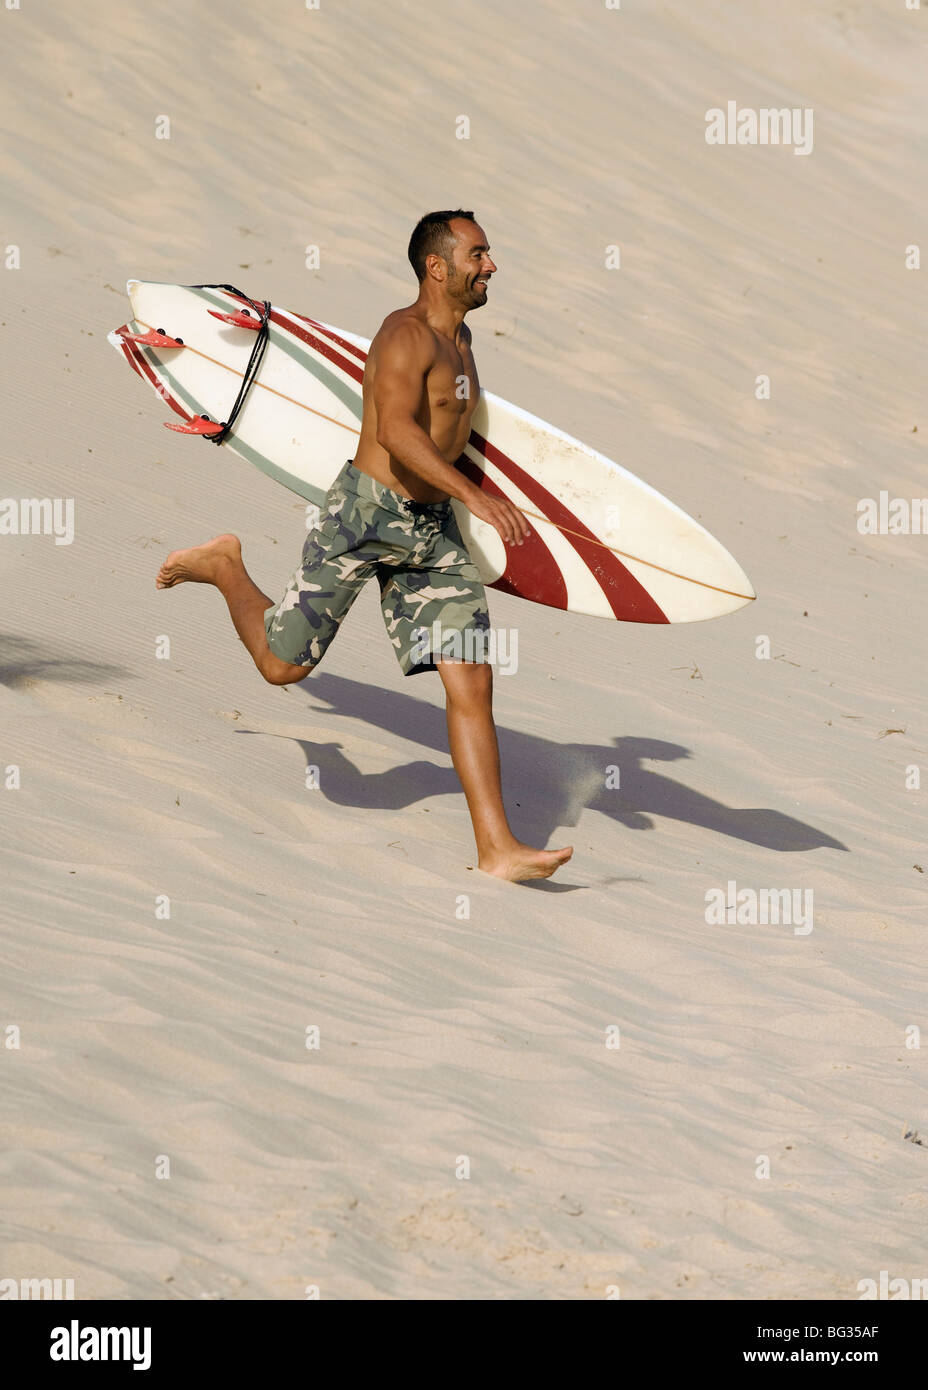 Homme qui court avec un surf sur la plage Banque D'Images